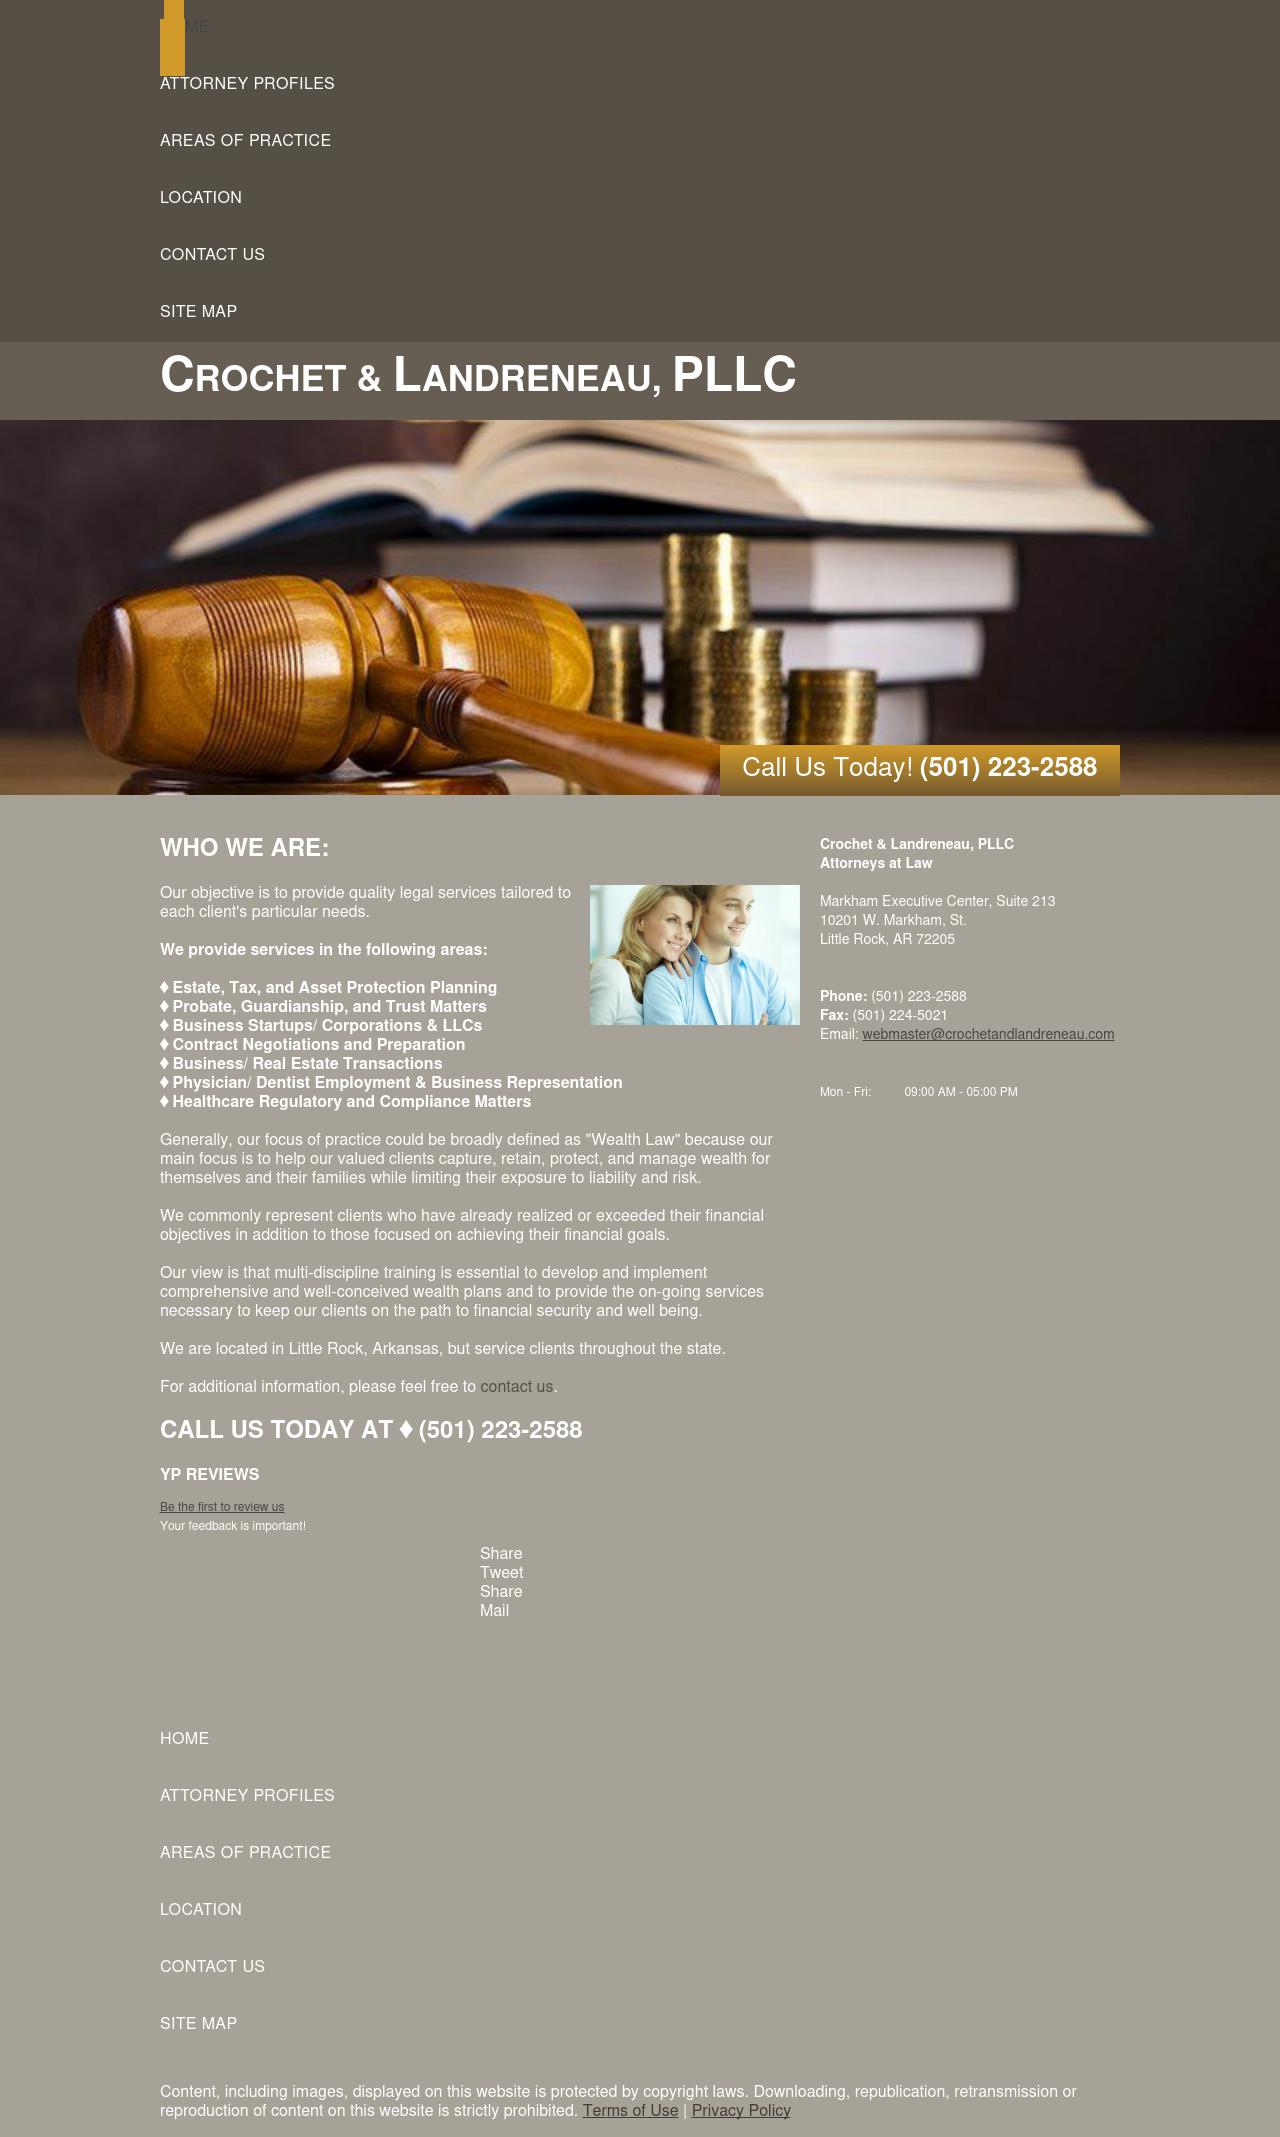 Crochet & Landreneau, PLLC - Little Rock AR Lawyers